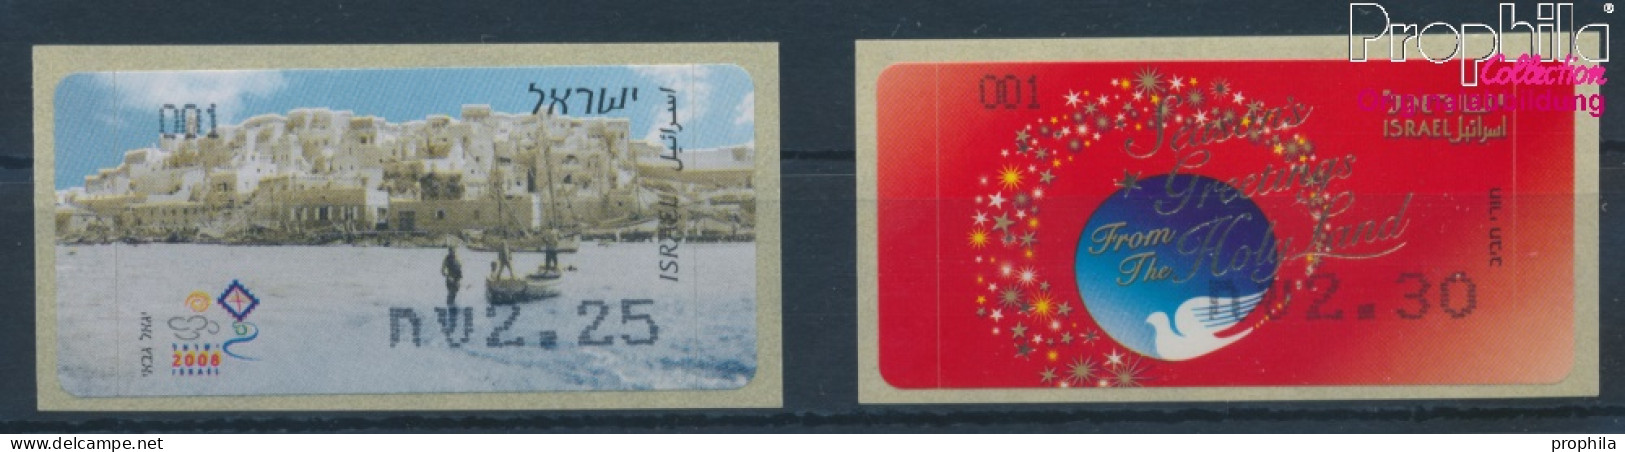 Israel ATM59-ATM60 Postfrisch 2008 Automatenmarken (10369157 - Franking Labels